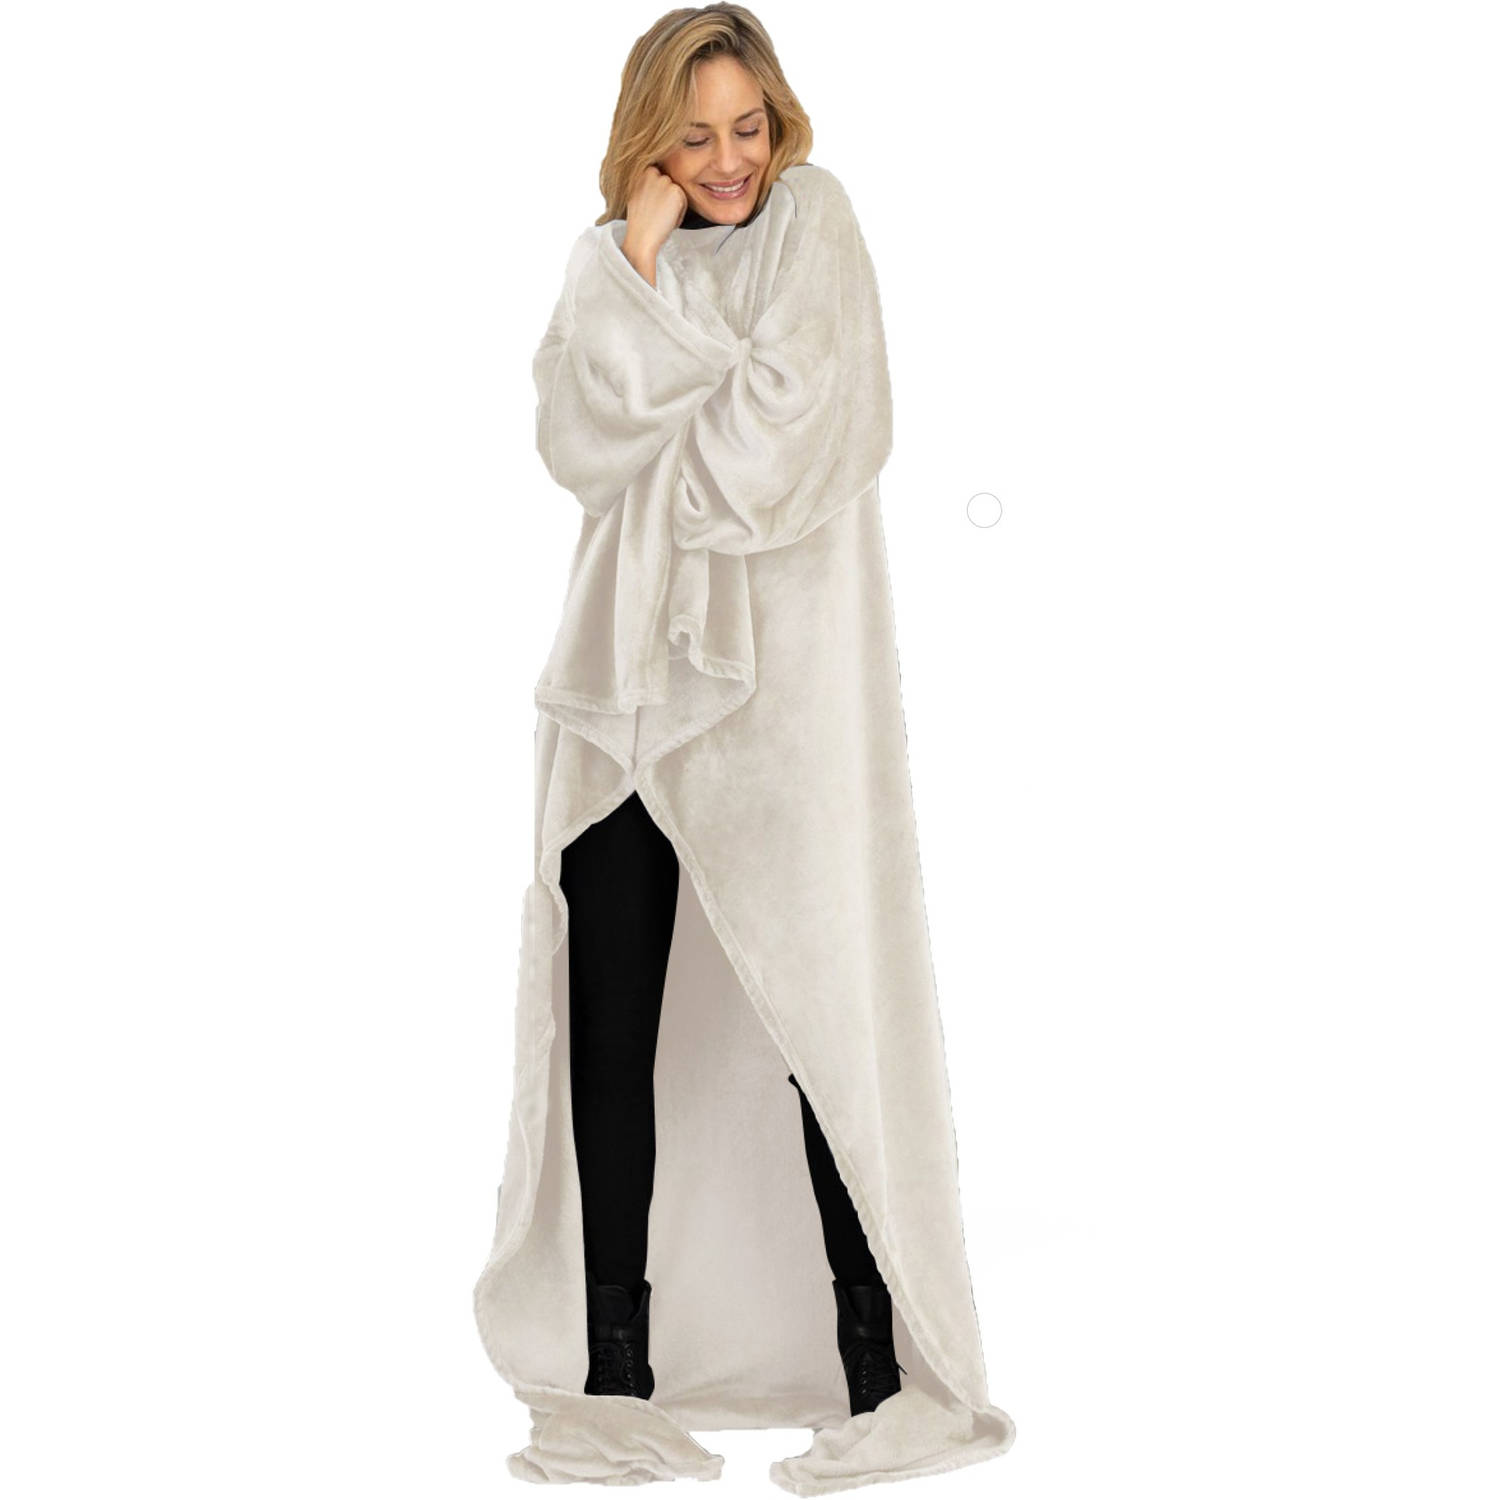 Bestaan huiswerk maken Verplicht O'DADDY® Fleece deken - fleece plaid met MOUWEN - 150x200 - super zacht -  Taupe | Blokker